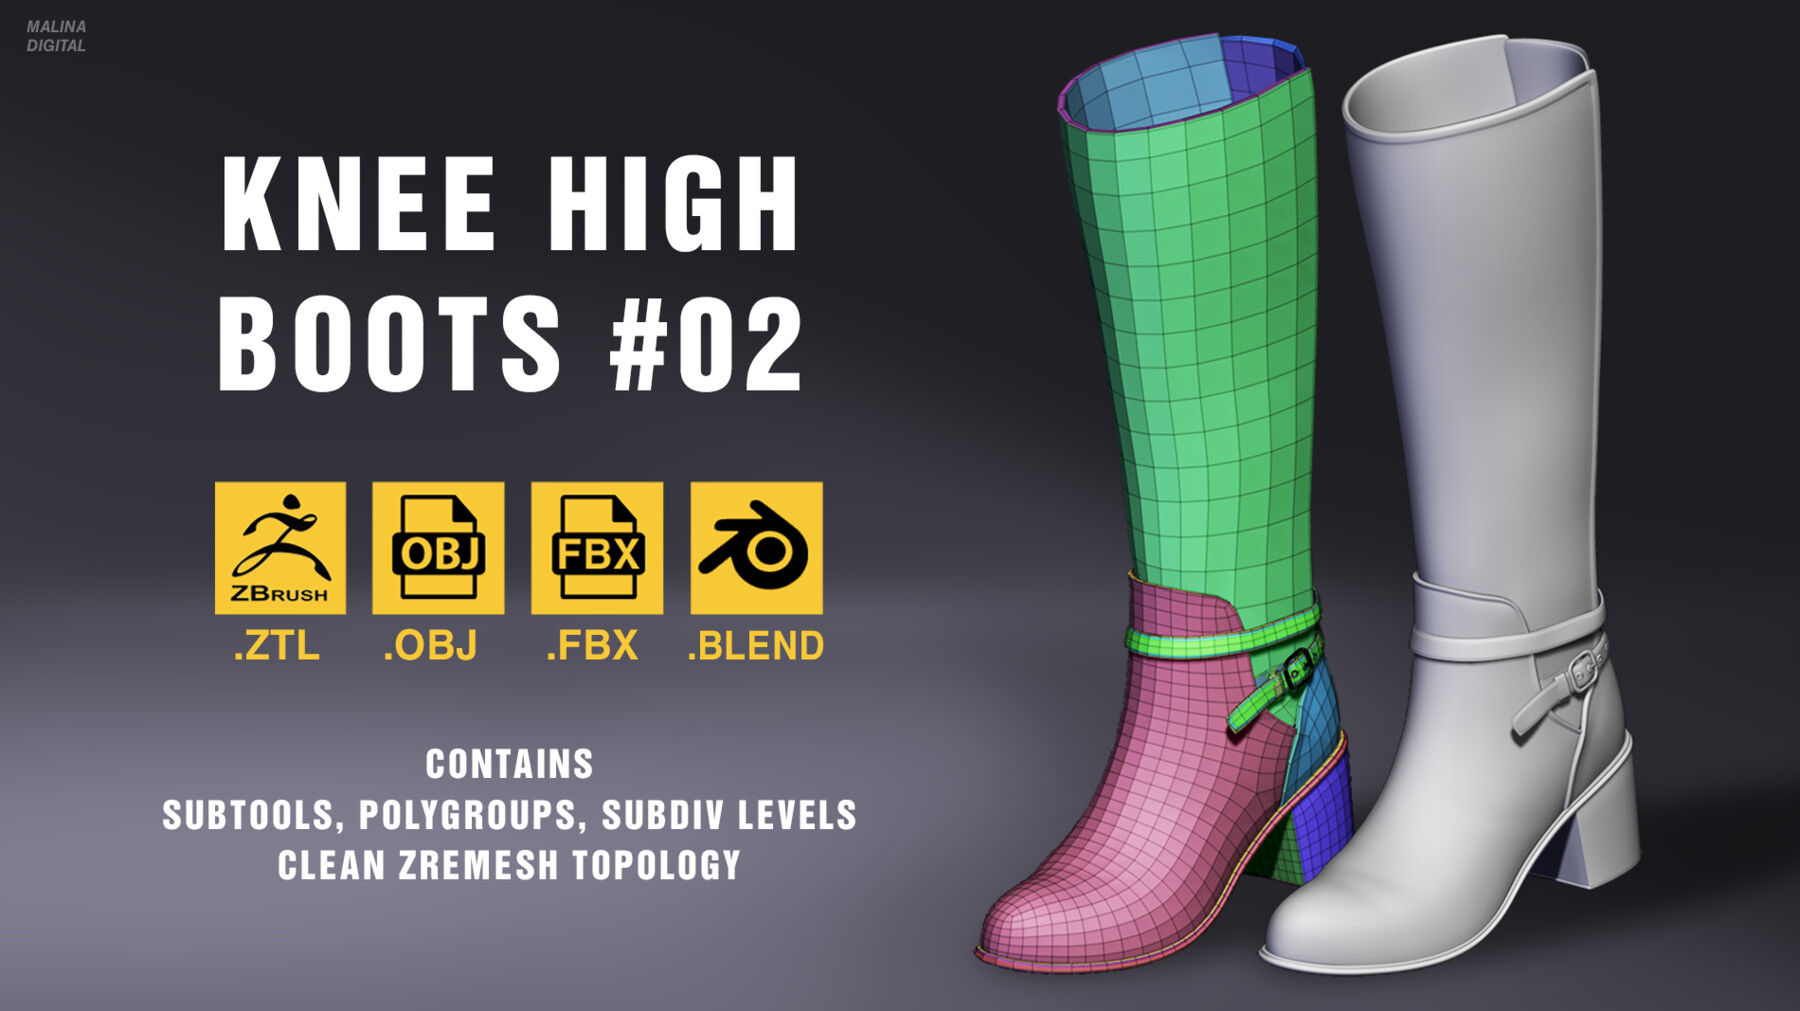 Knee high boots #02. .ZTL + OBJ + FBX + BLEND